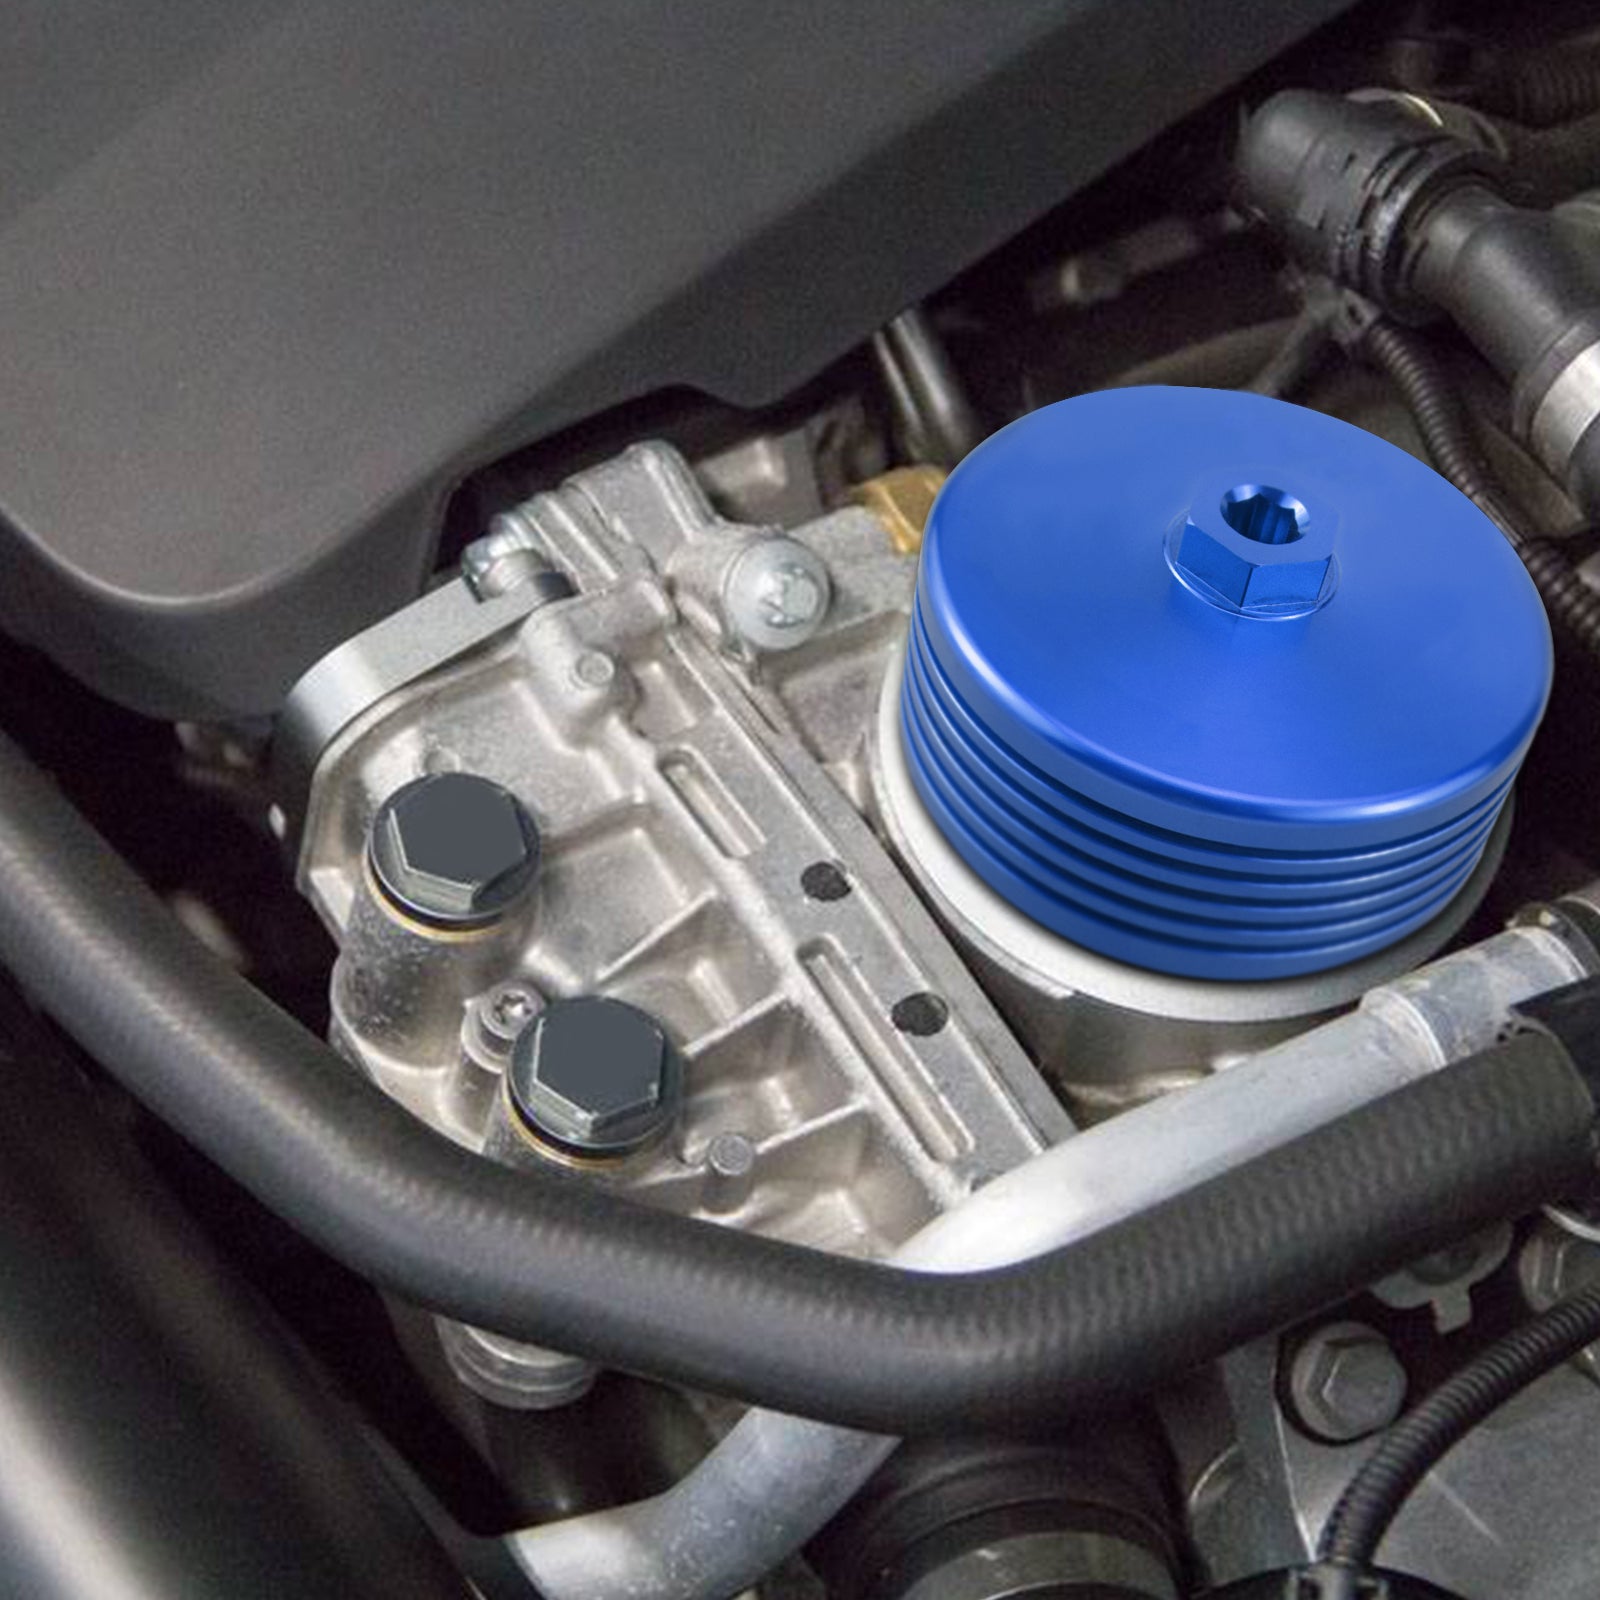 BEVINSEE Aluminum Oil Filter Housing Cap for BMW N54/N55/S55/N20 Engines